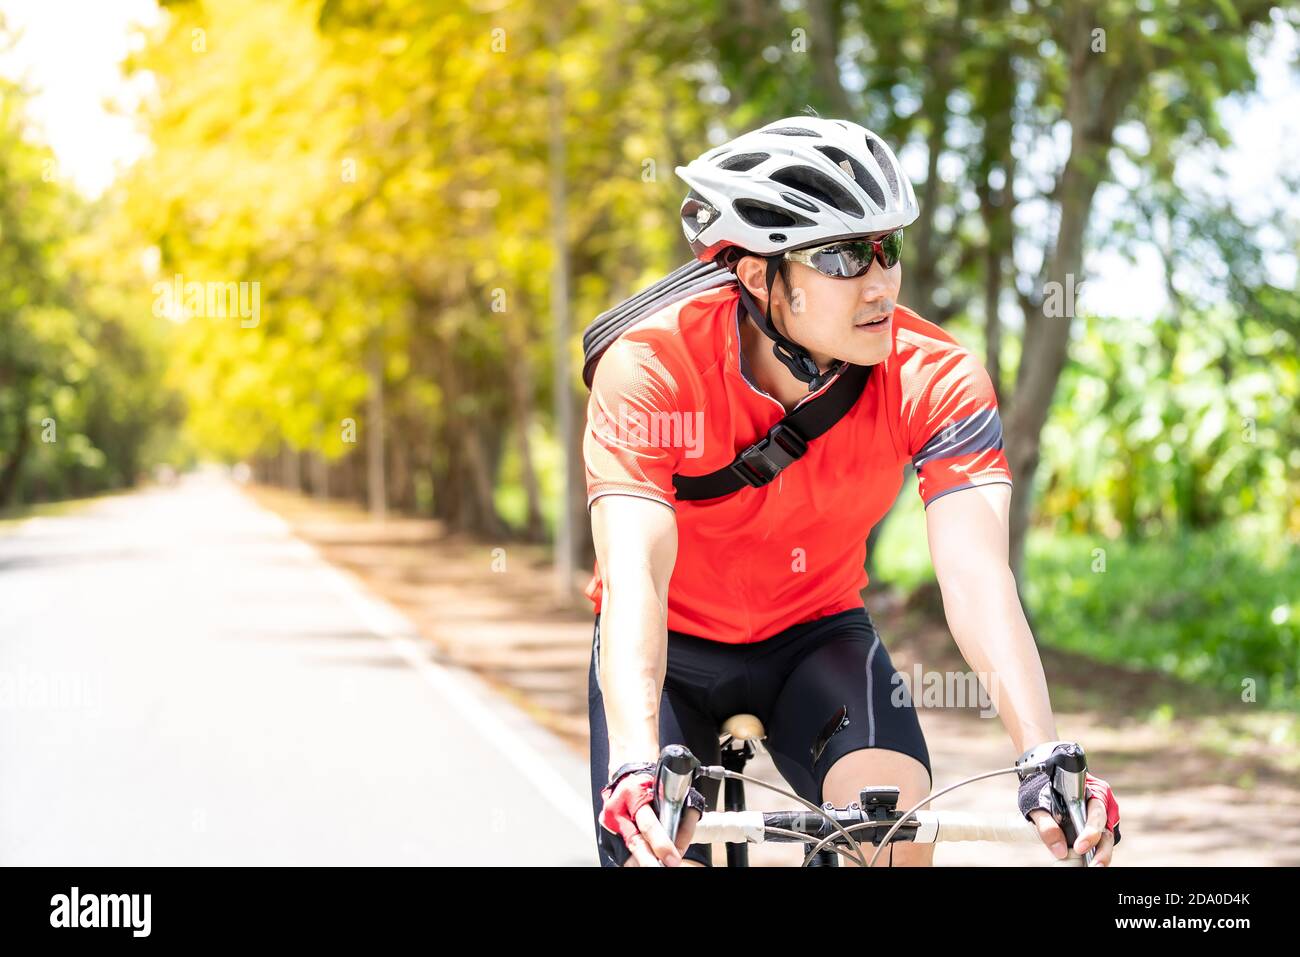 menor La cabra Billy Cocinando Retrato de un ciclista asiático masculino en la camiseta deportiva en  bicicleta a lo largo de la carretera de campo con árbol verde en el fondo.  Fin de semana deporte al aire